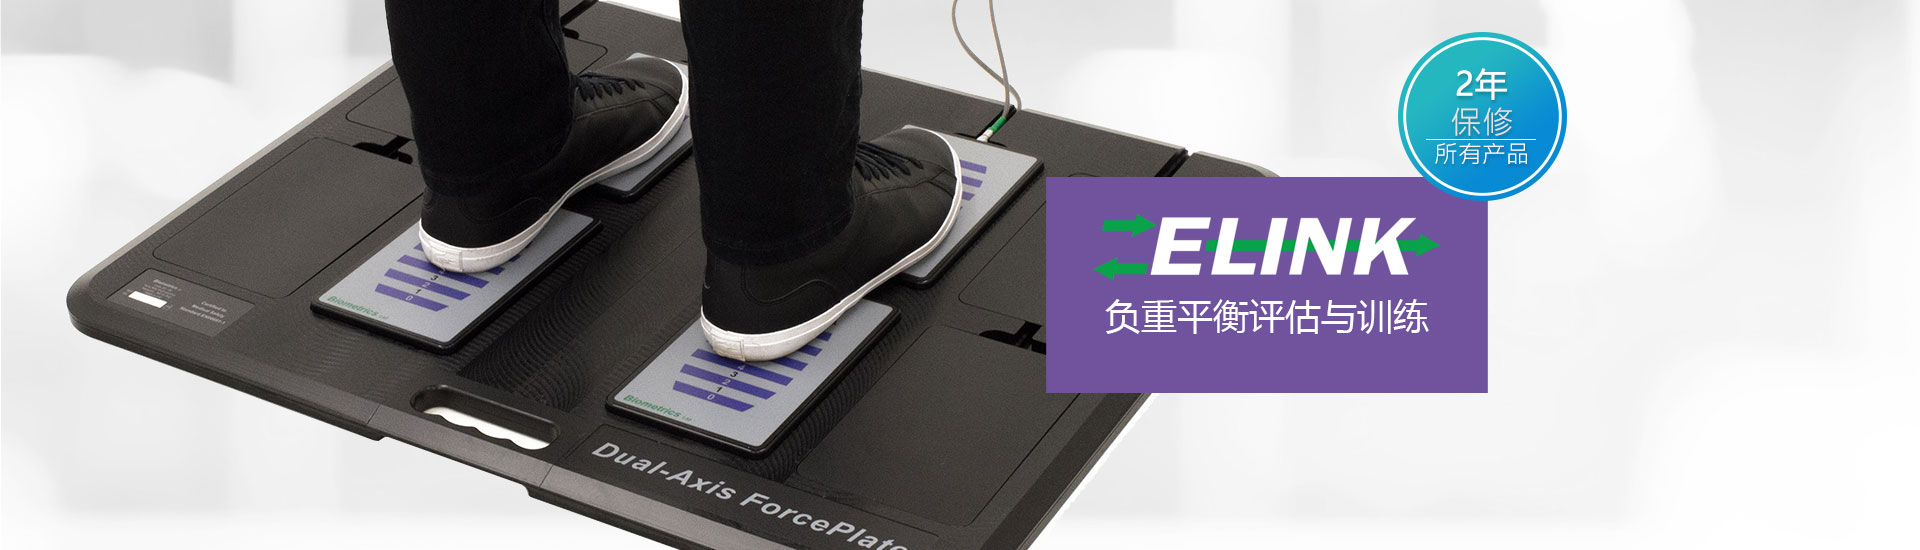 E-LINK 压力板